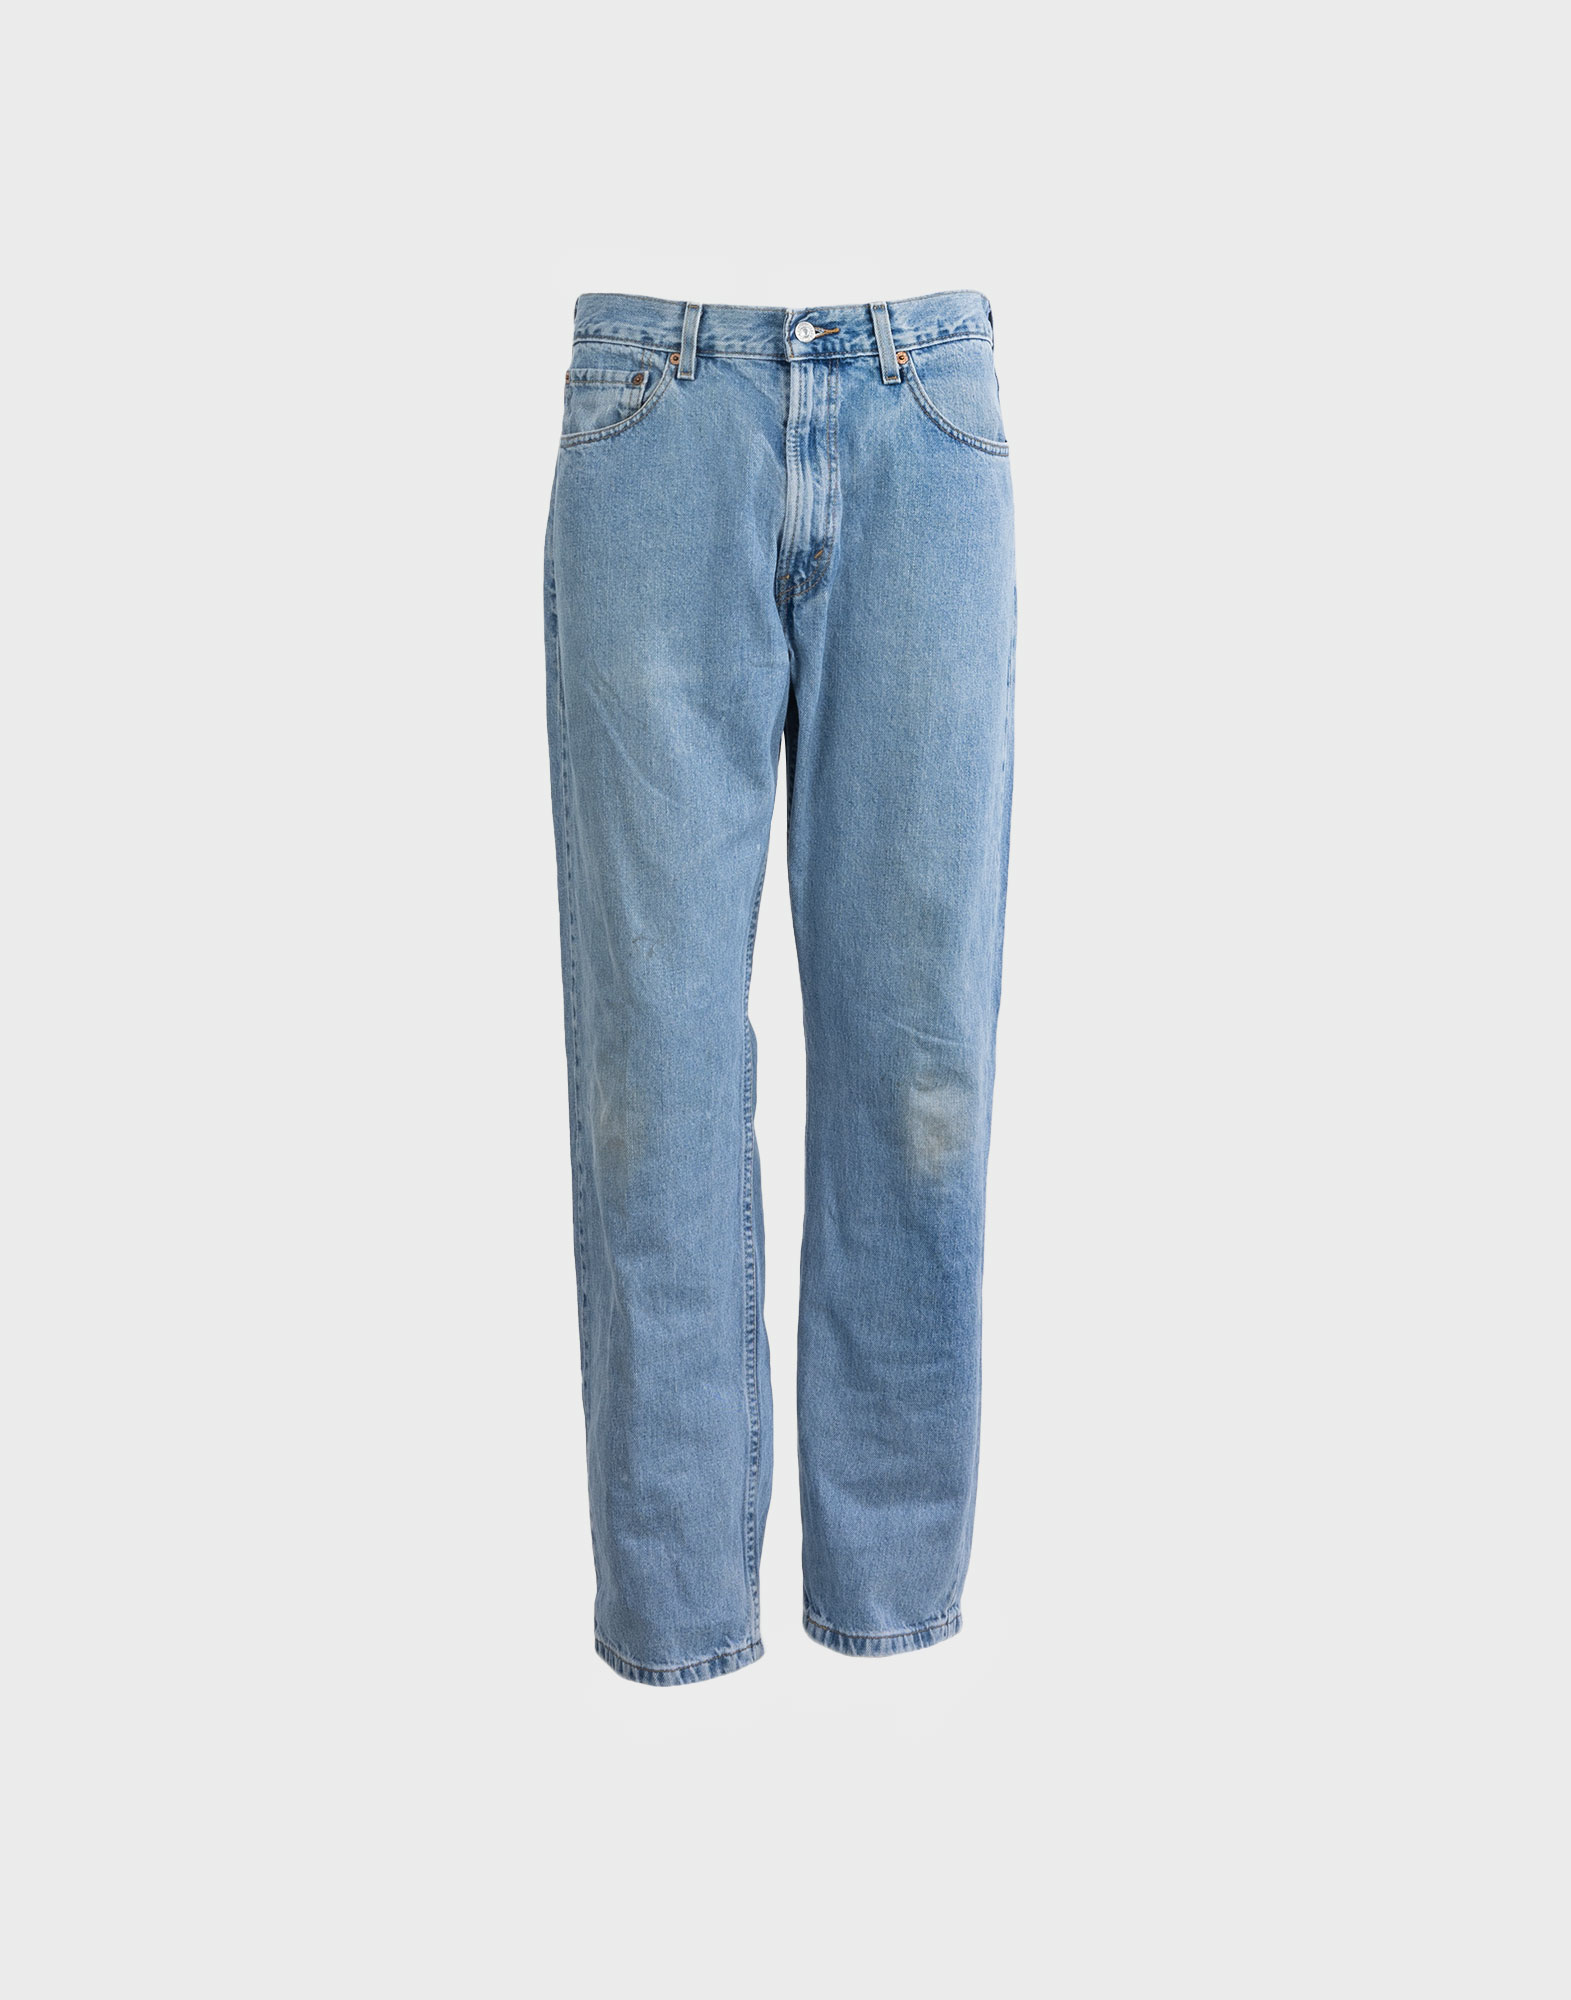 levis jeans pants model 505 light wash